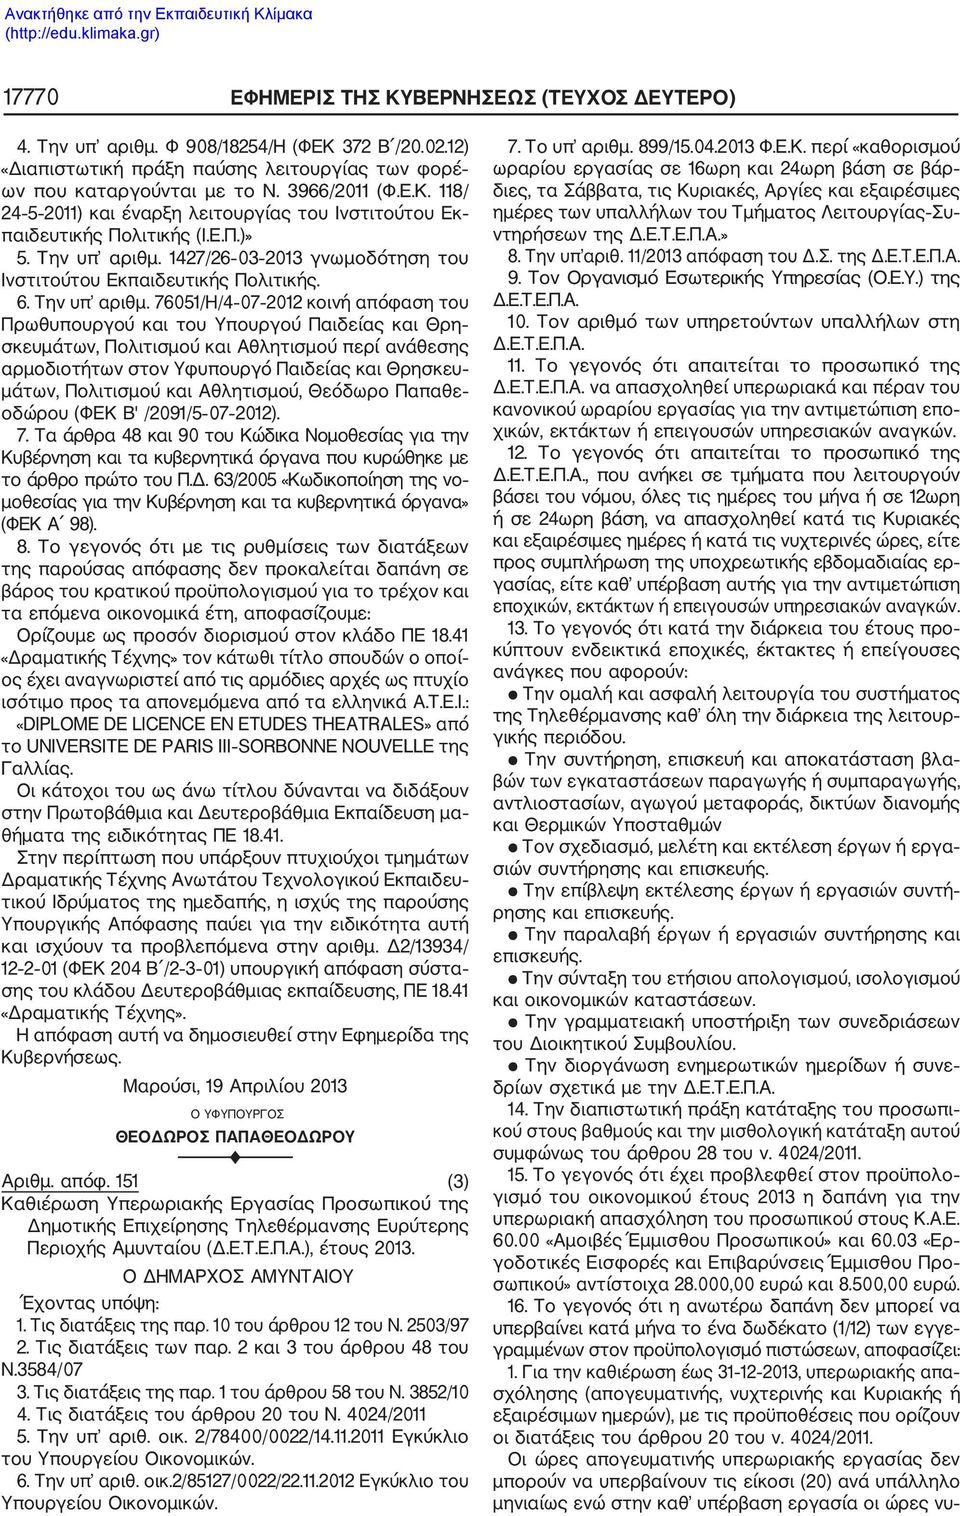 1427/26 03 2013 γνωμοδότηση του Ινστιτούτου Εκπαιδευτικής Πολιτικής. 6. Την υπ αριθμ.